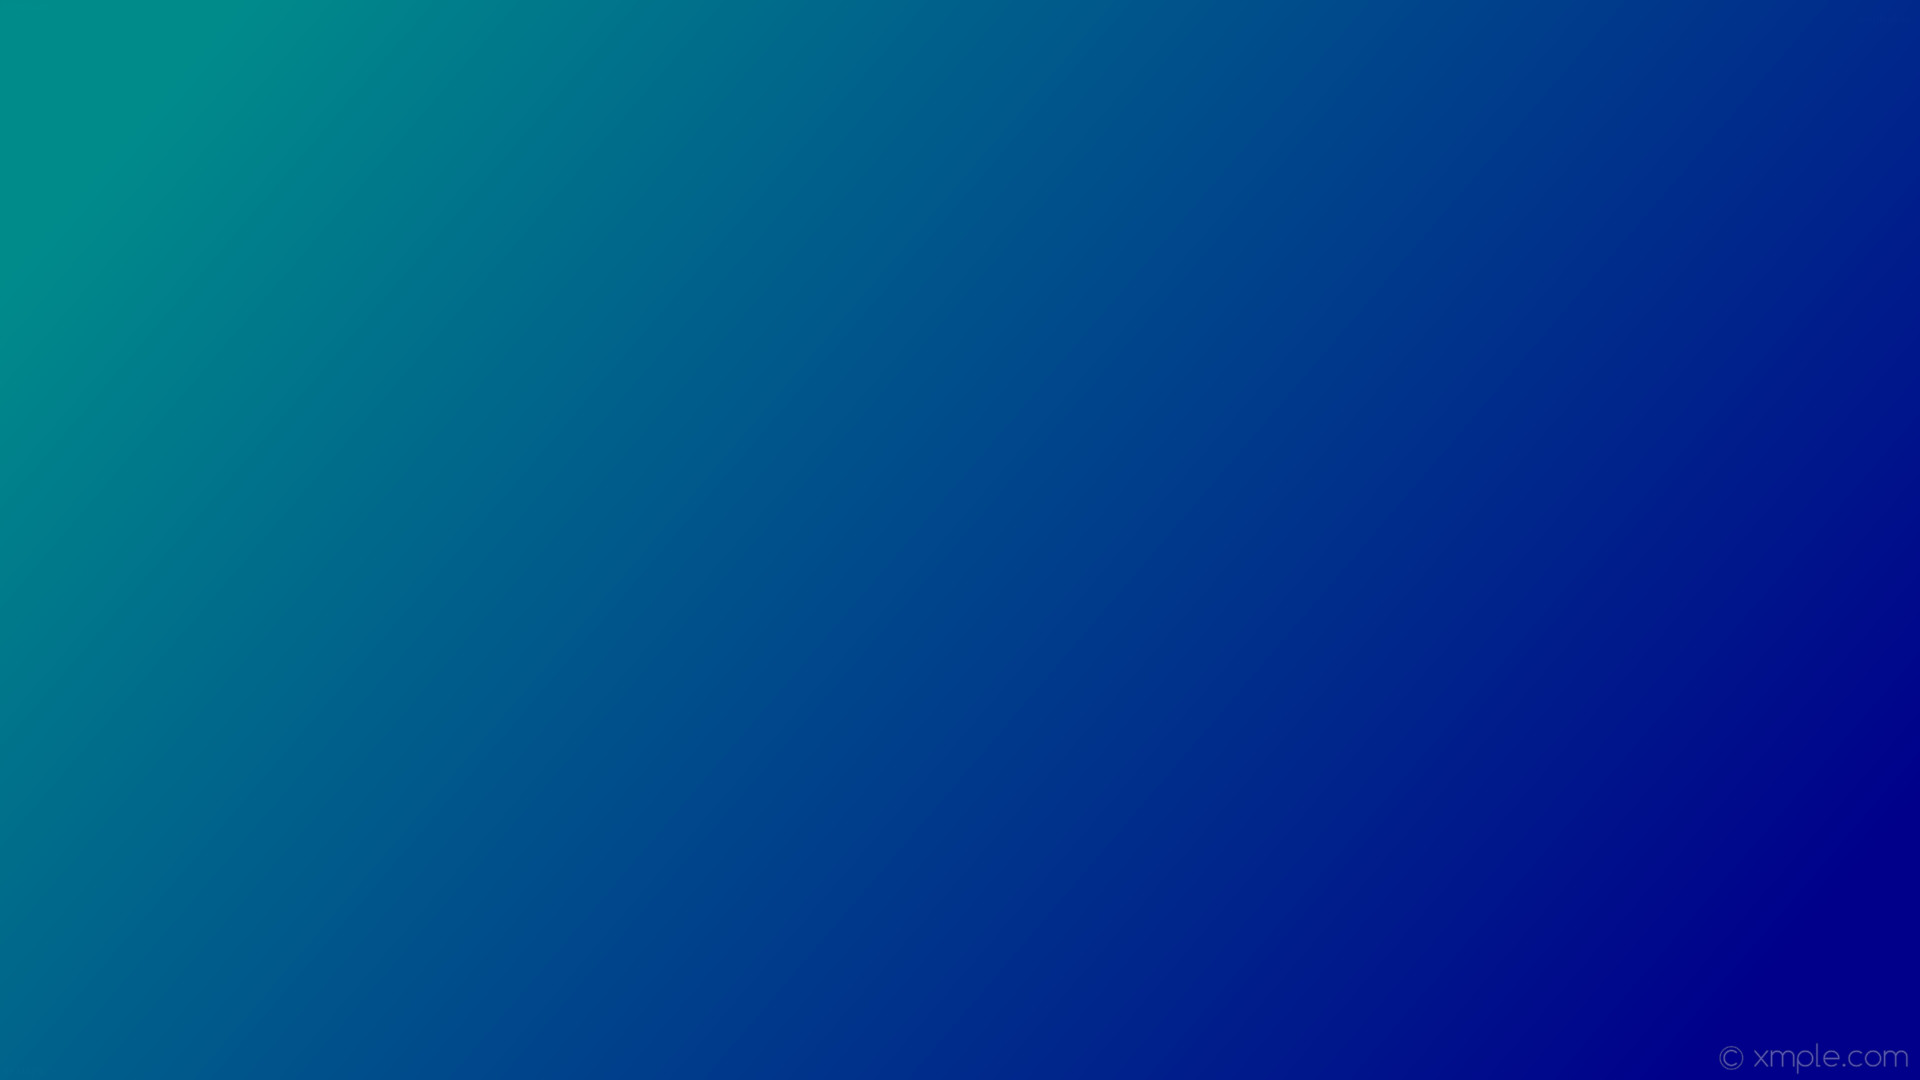 1920x1080 wallpaper green blue gradient linear dark cyan dark blue #008b8b #00008b  165Â°